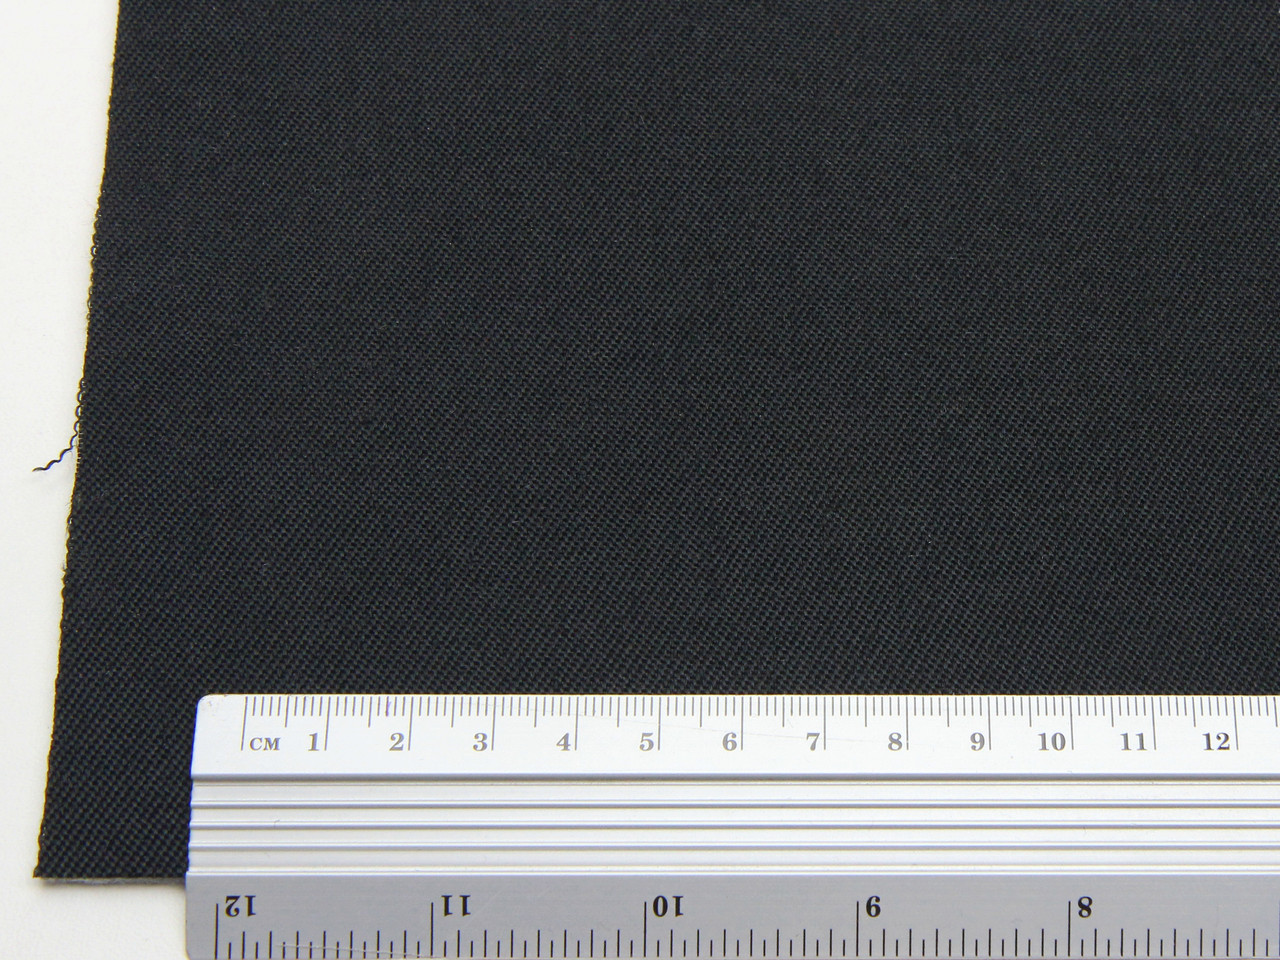 Автоткань для боковой части сидений TSB-4/13 (черный), основа войлок 3мм, ширина 180см детальная фотка